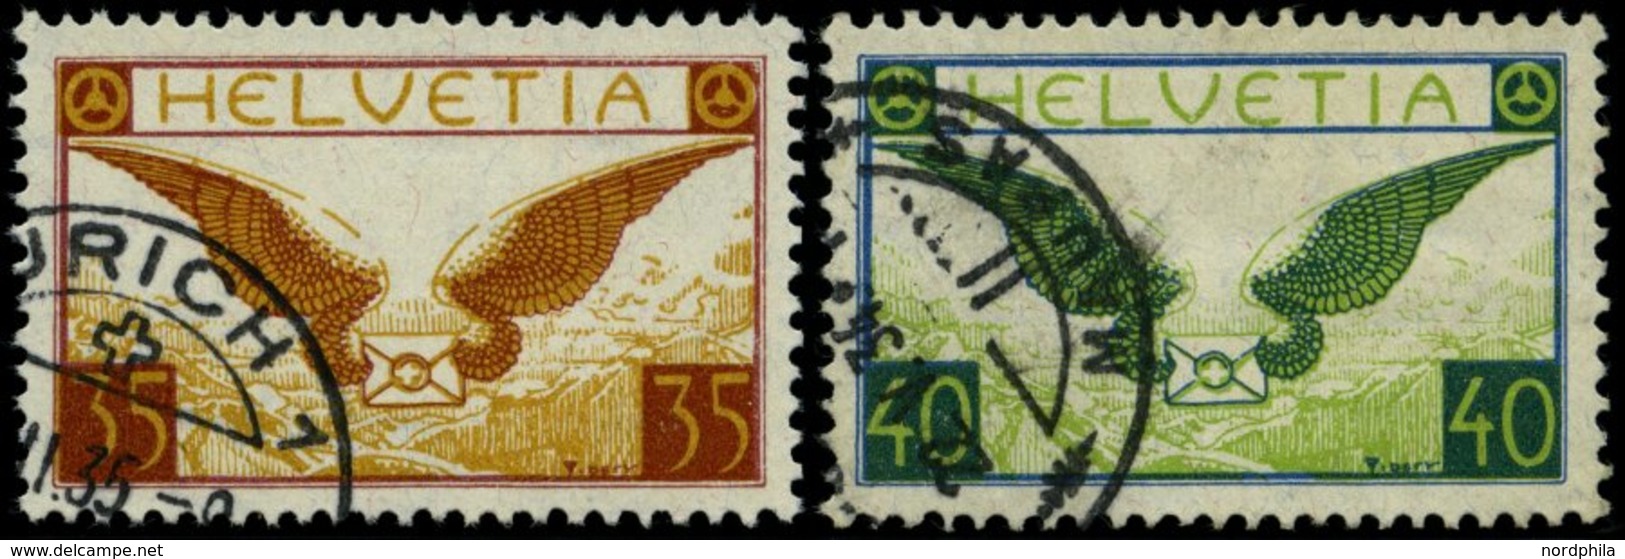 SCHWEIZ BUNDESPOST 233/4x O, 1933, Geflügelter Brief, Gewöhnliches Papier, Pracht, Mi. 160.- - 1843-1852 Poste Federali E Cantonali